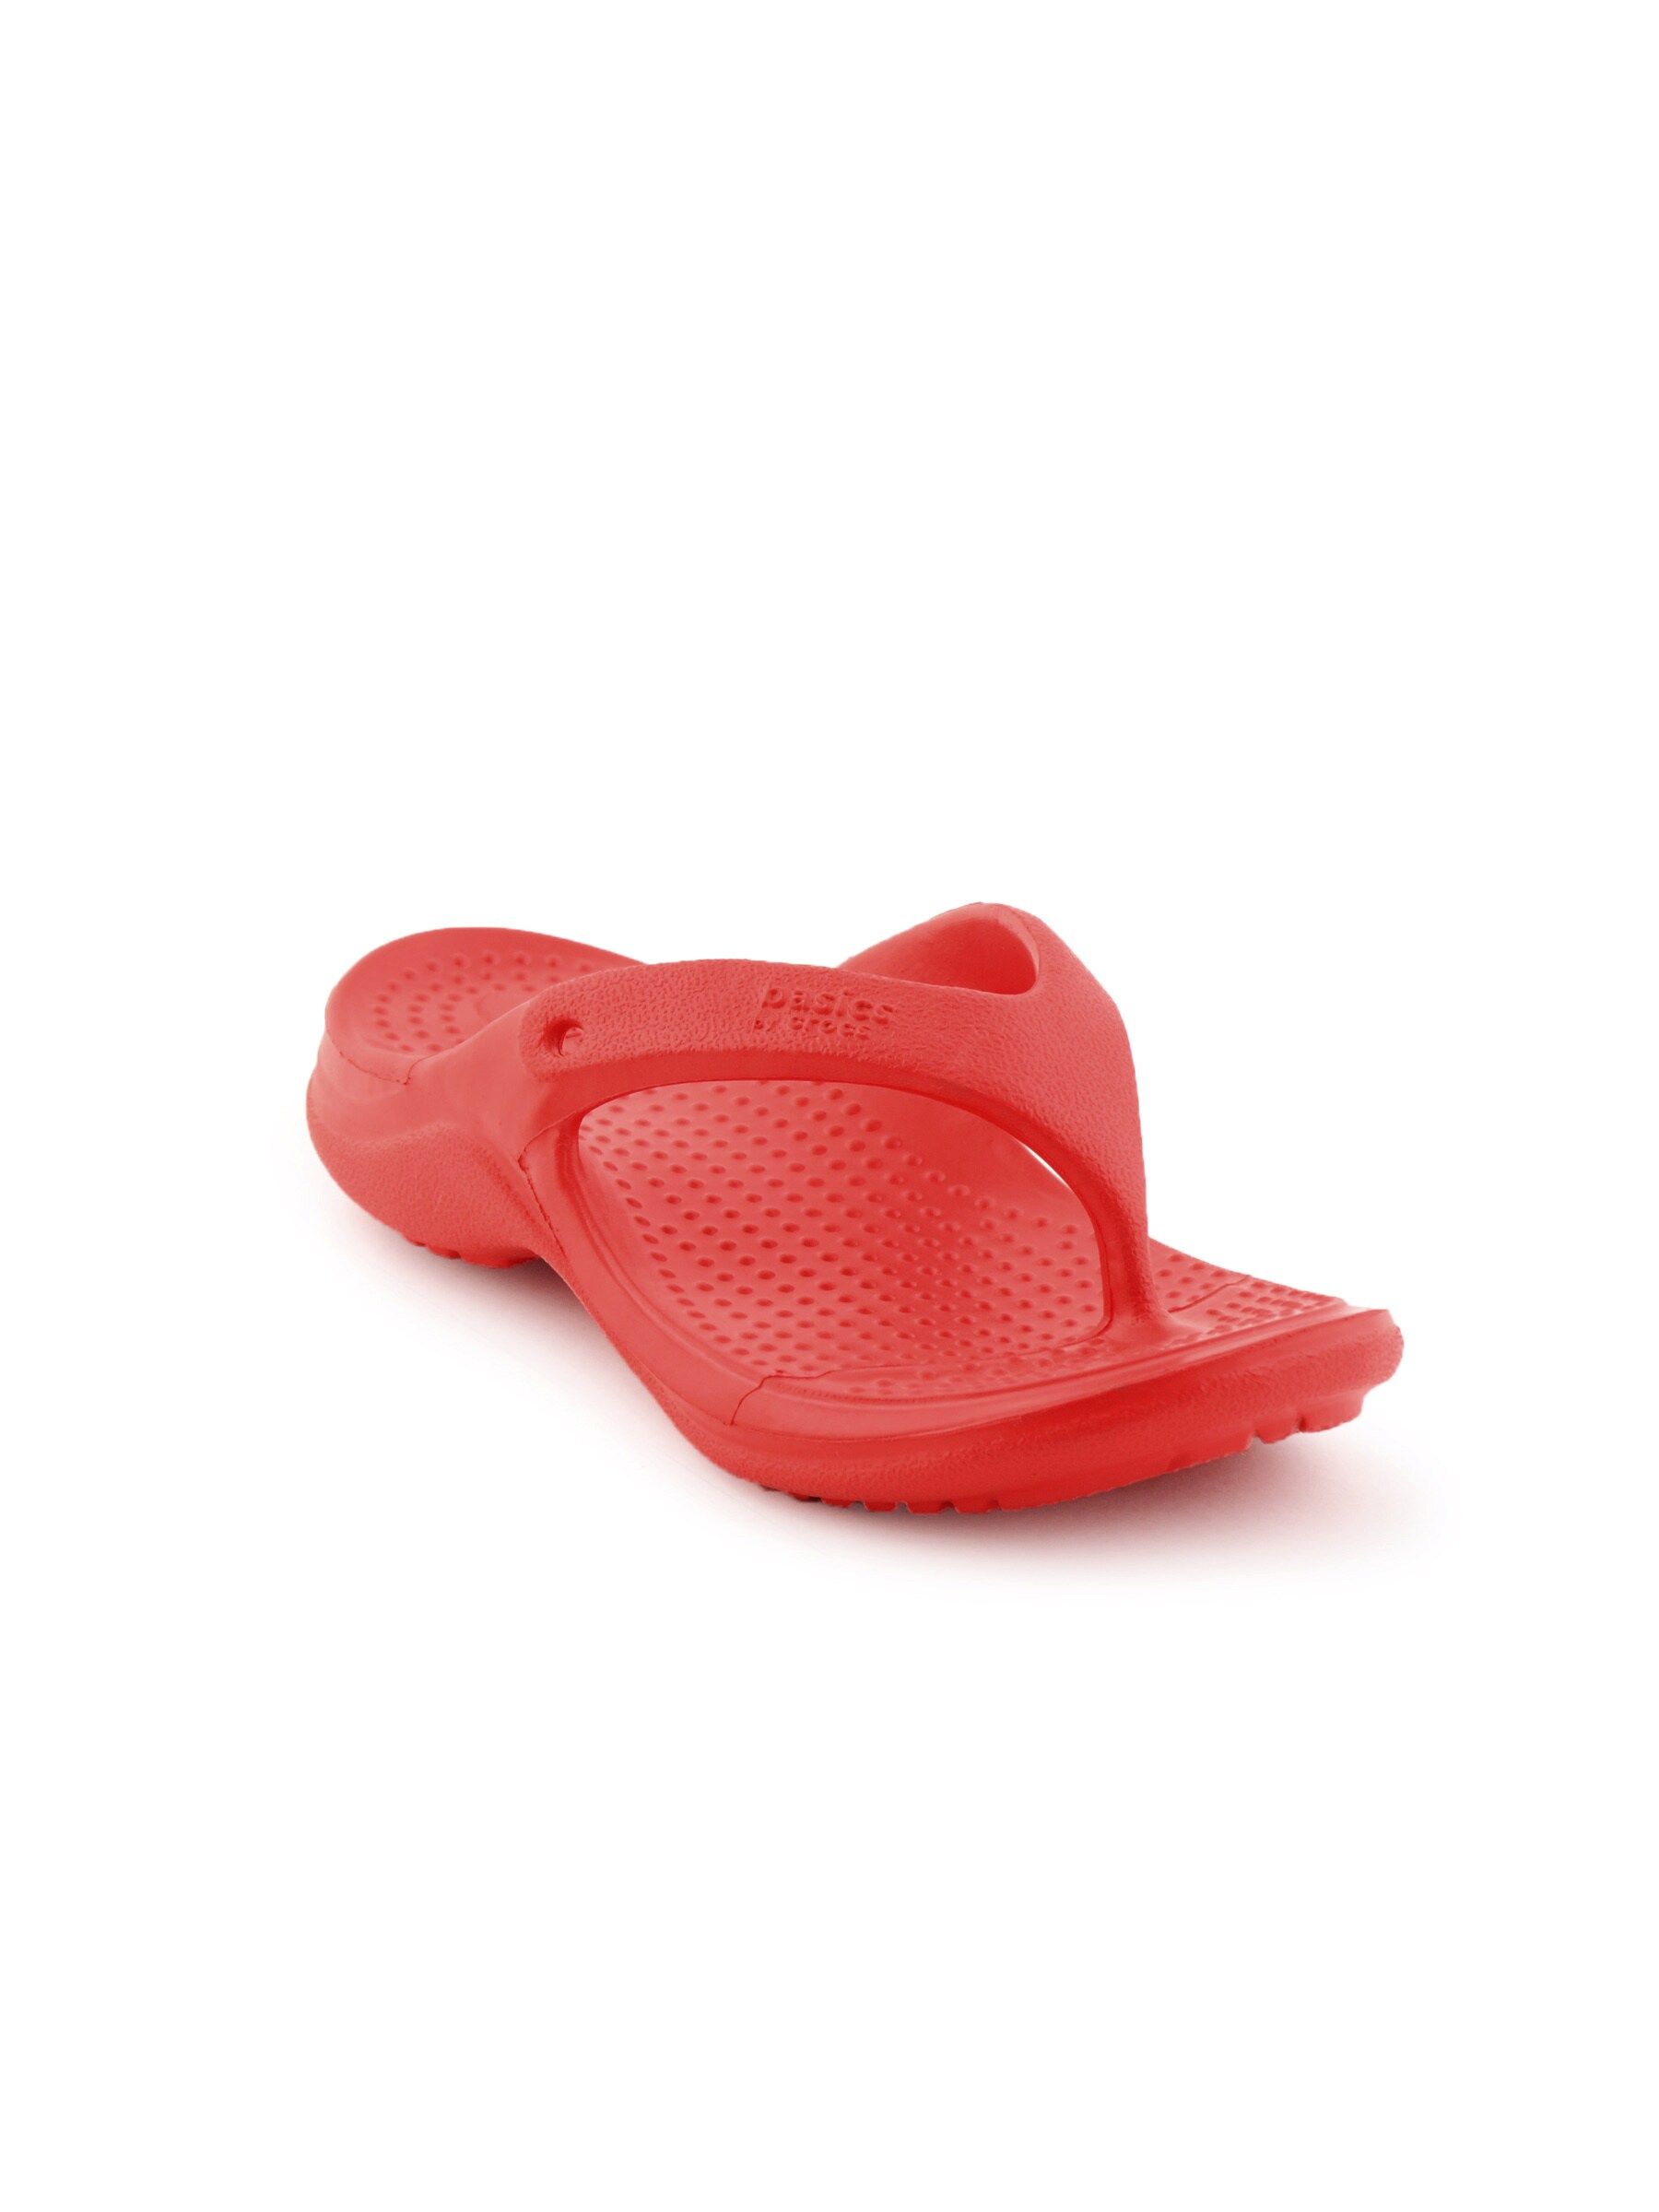 Crocs Kids Red Flip-Flops